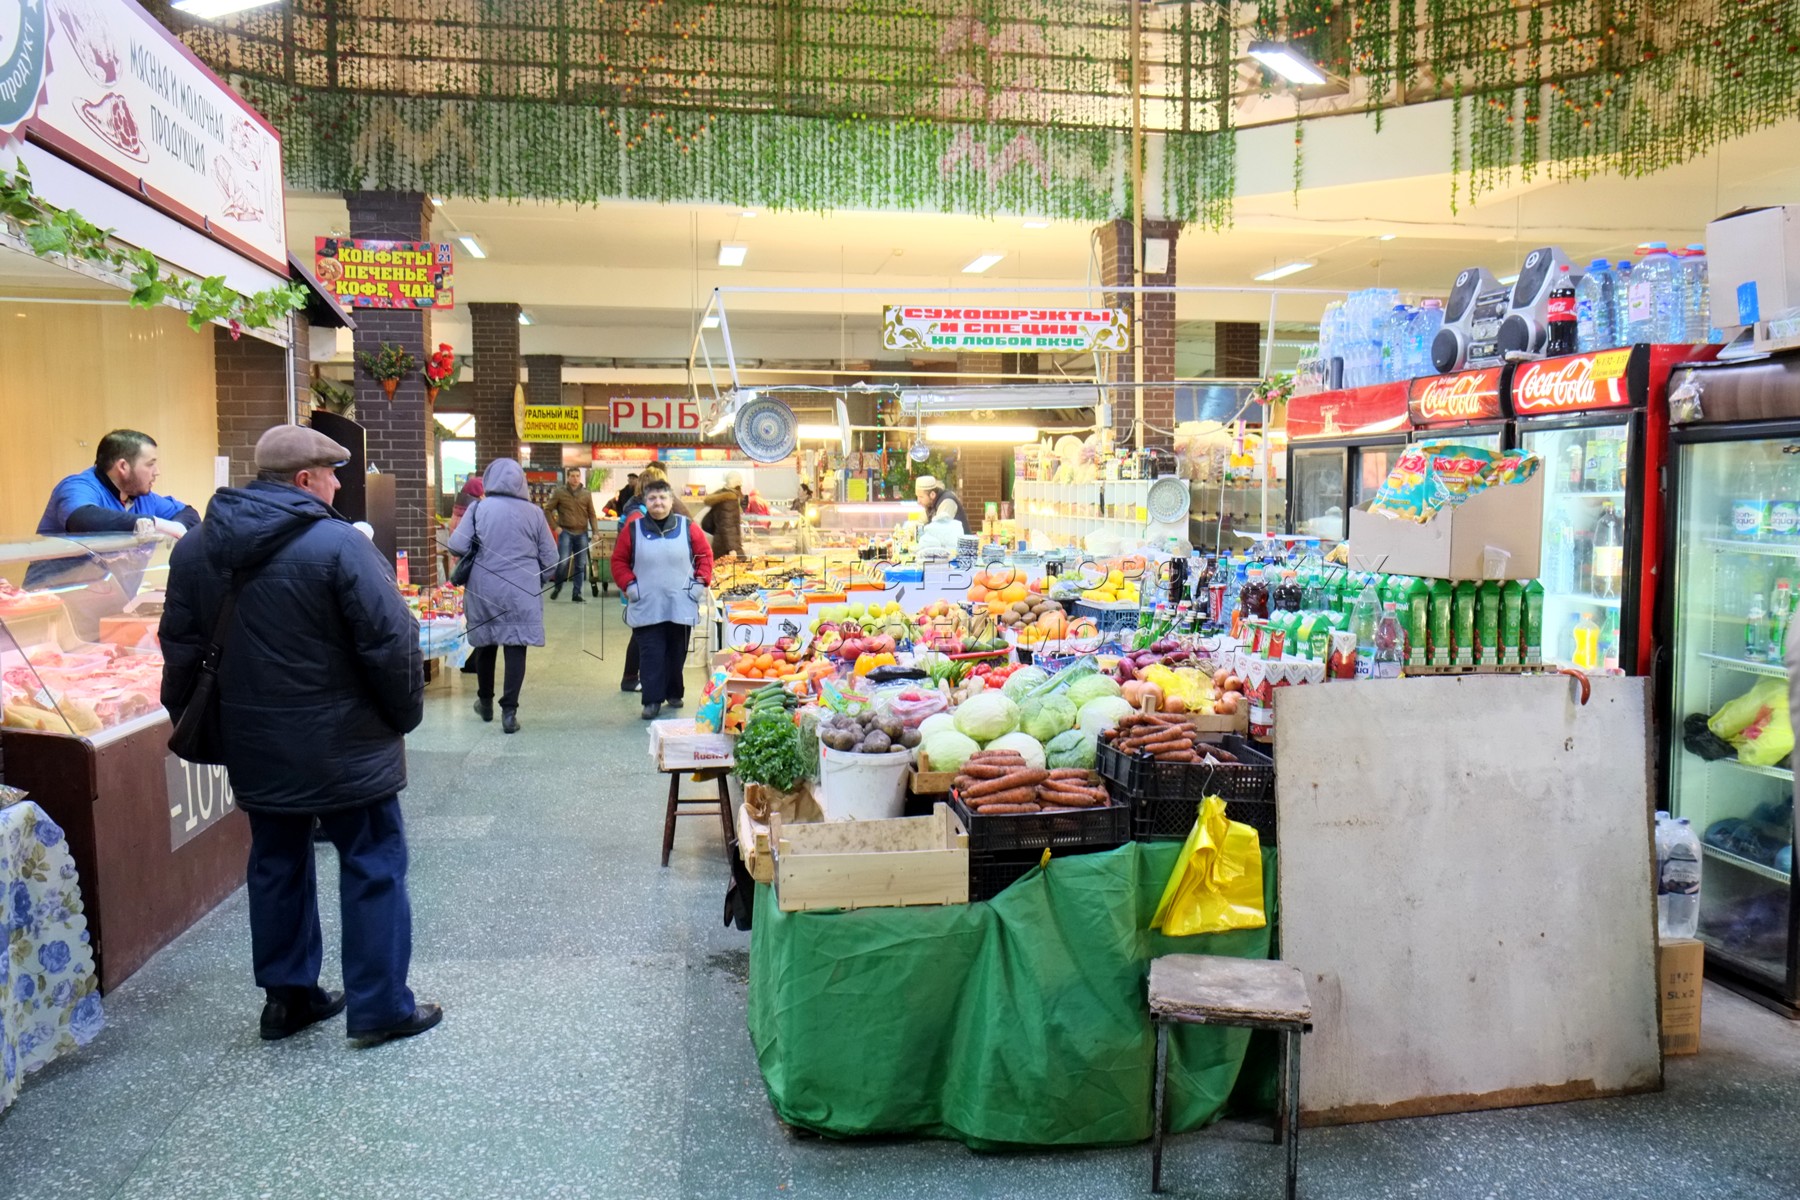 Ближайший рынок рядом. Рынок у метро. Фермерский рынок на каширке. Рынок на каширке продуктовый. Метро Каширское и рынок.